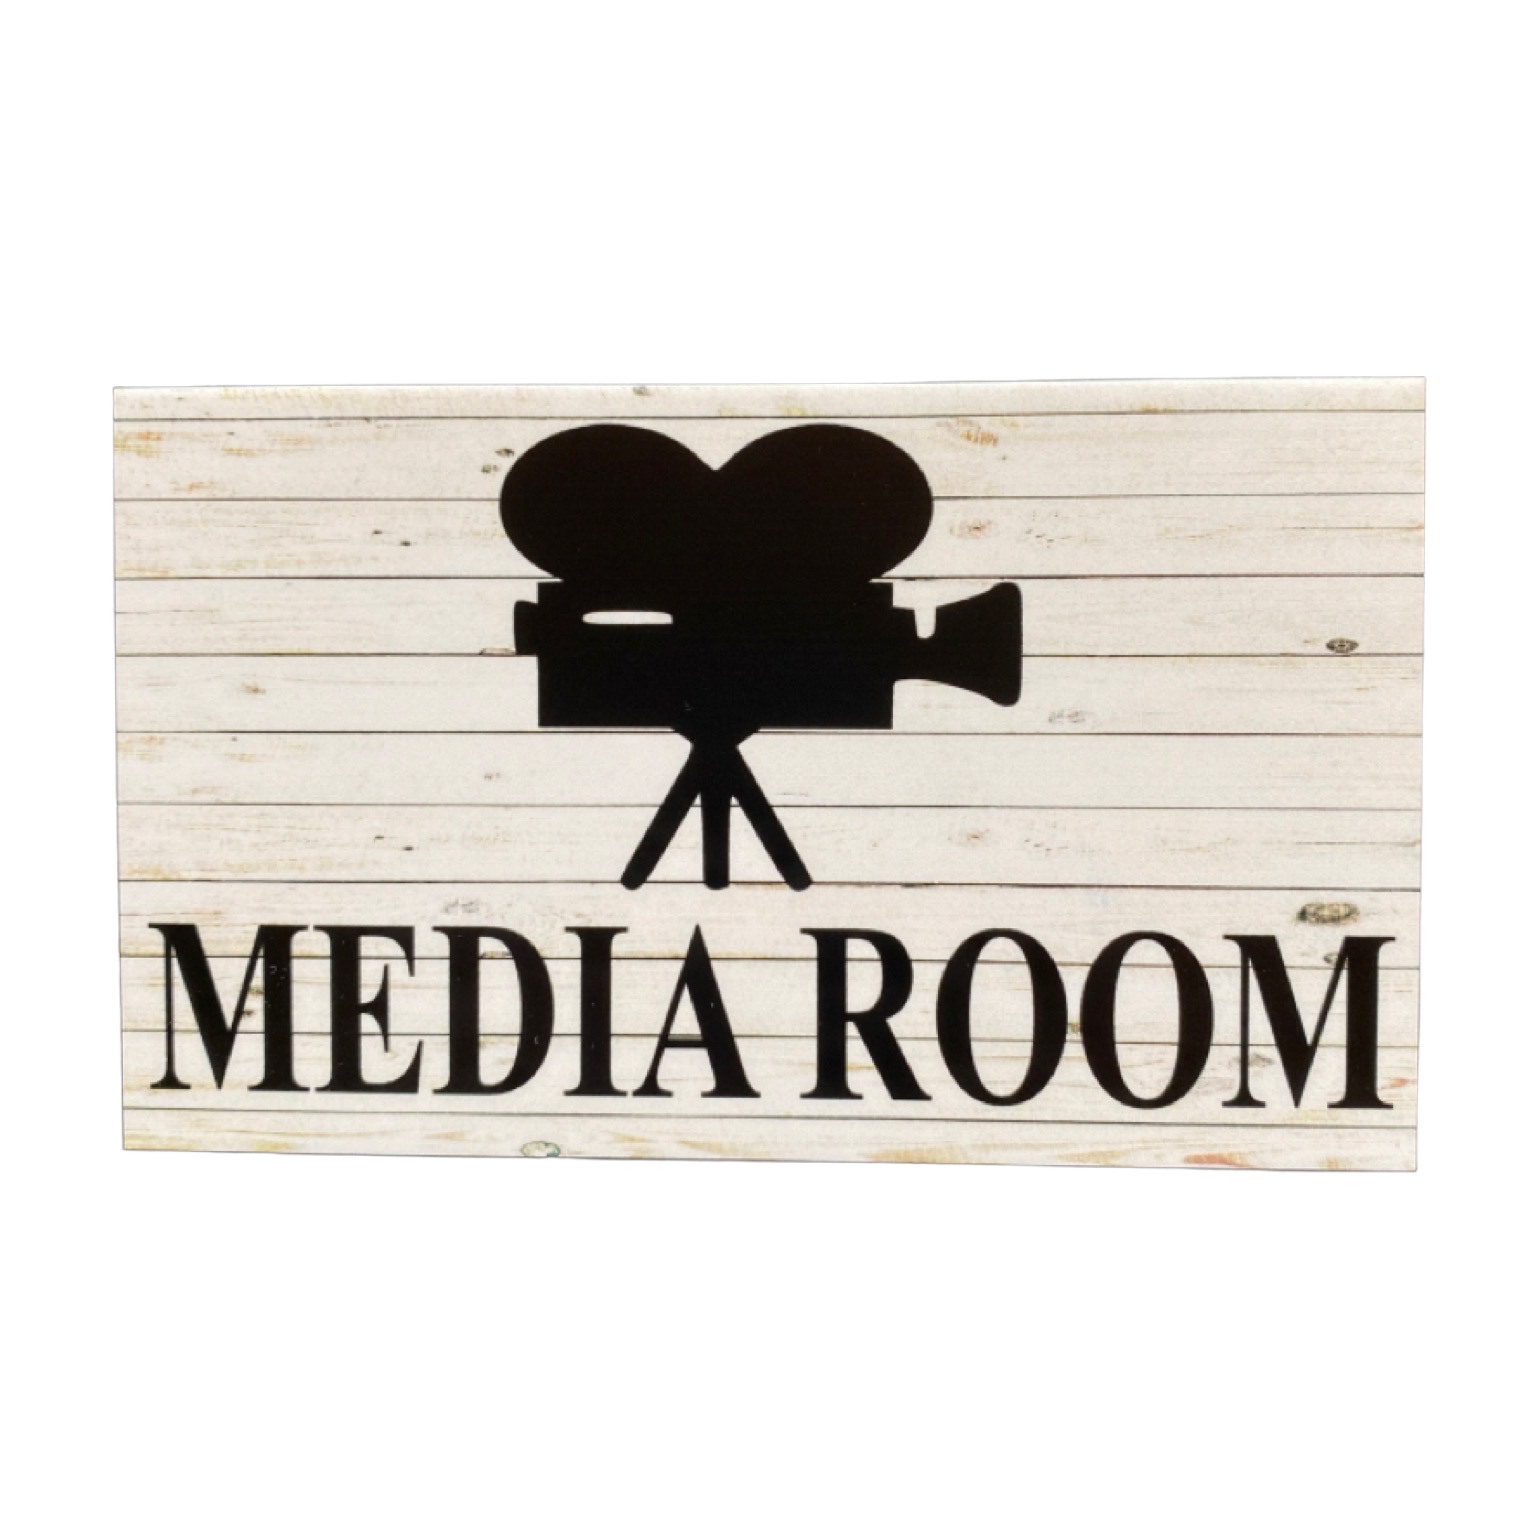 Media Room Rustic Door Sign - The Renmy Store Homewares & Gifts 